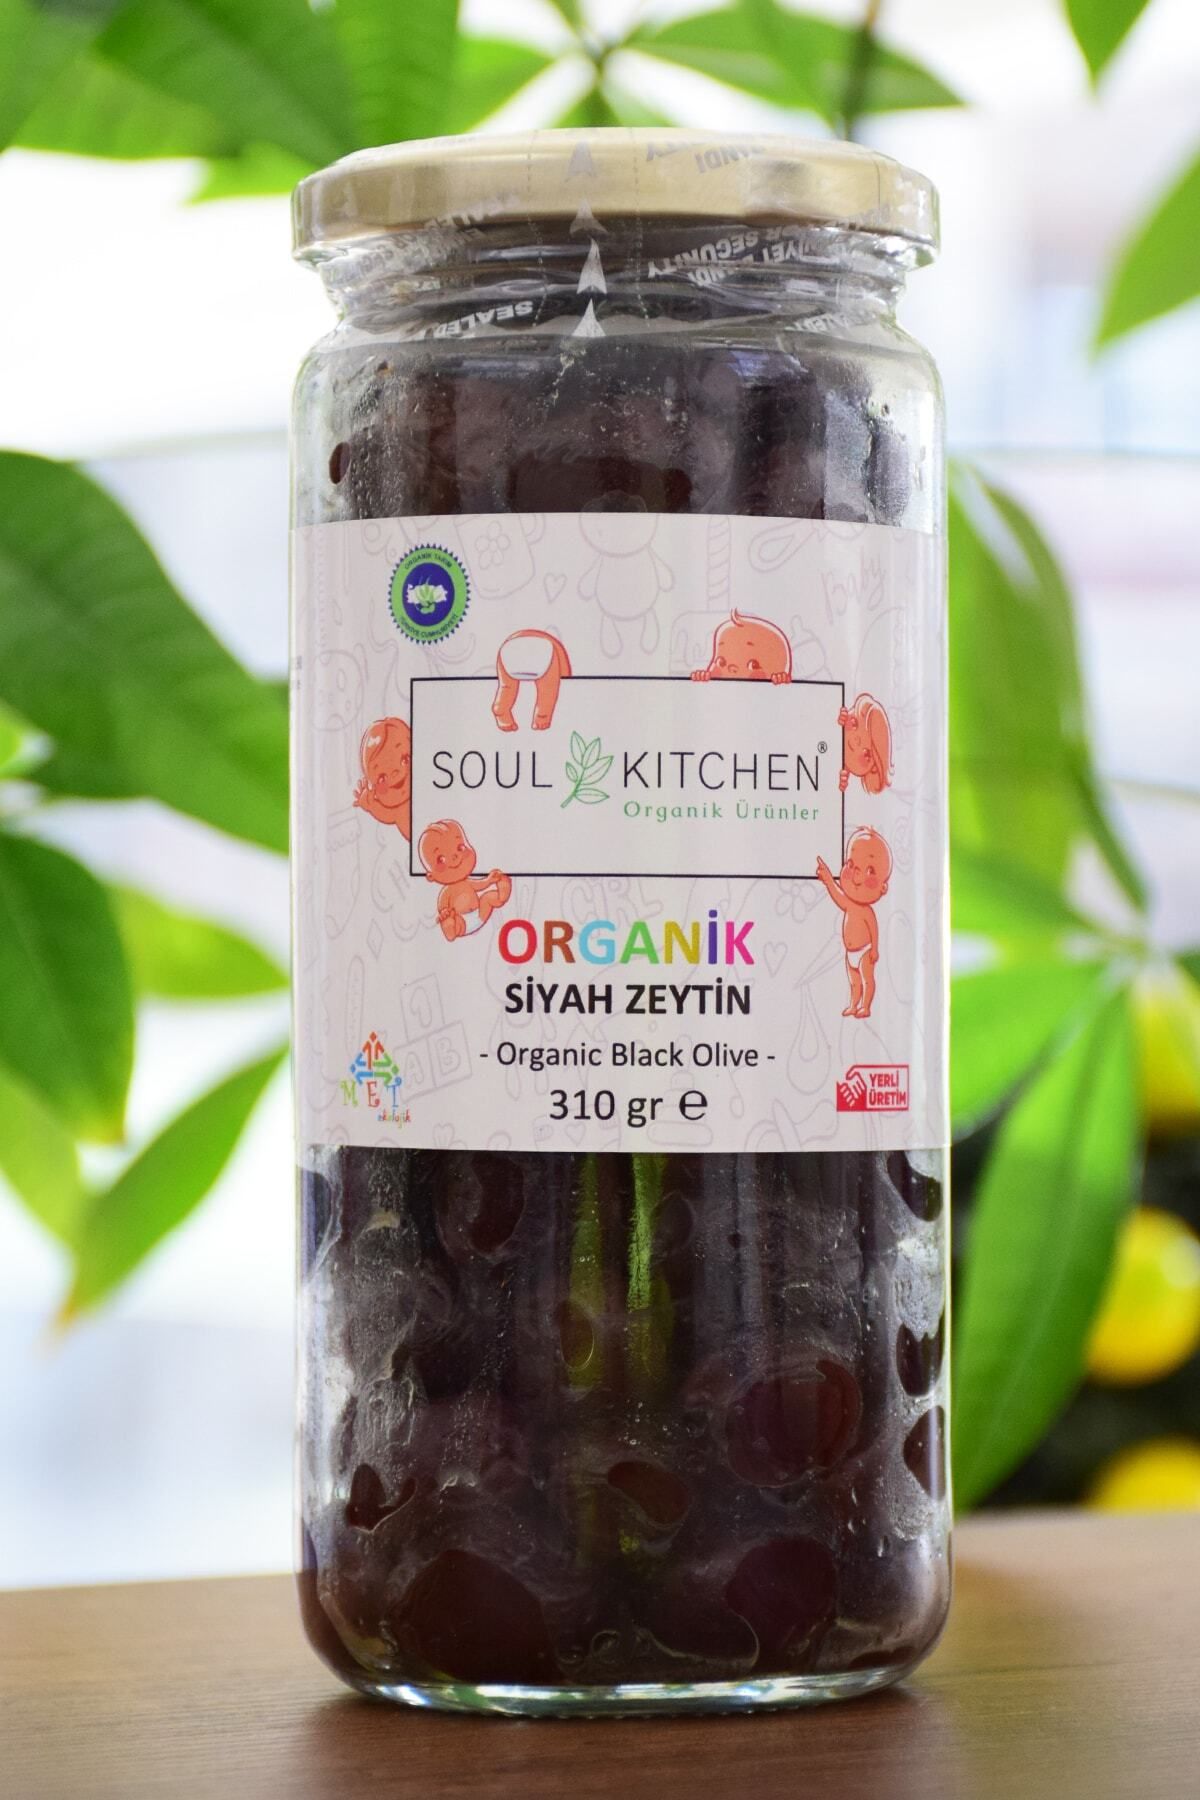 Soul Kitchen Organik Ürünler Organik Bebek Siyah Zeytin 310gr